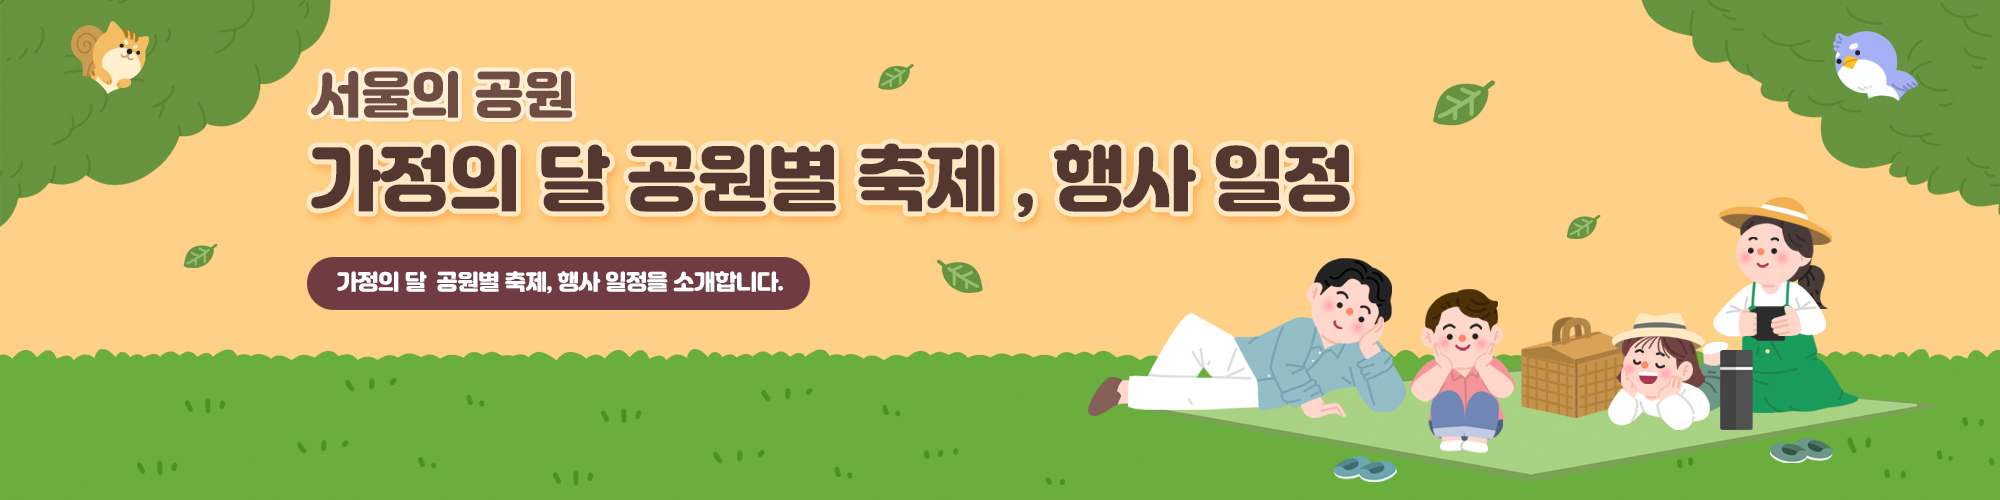 서울의 공원
가정의 달 공원별 축제, 행사일정
가정ㅇ의 달 공원별 축제, 행사 일정을 소개합니다. 